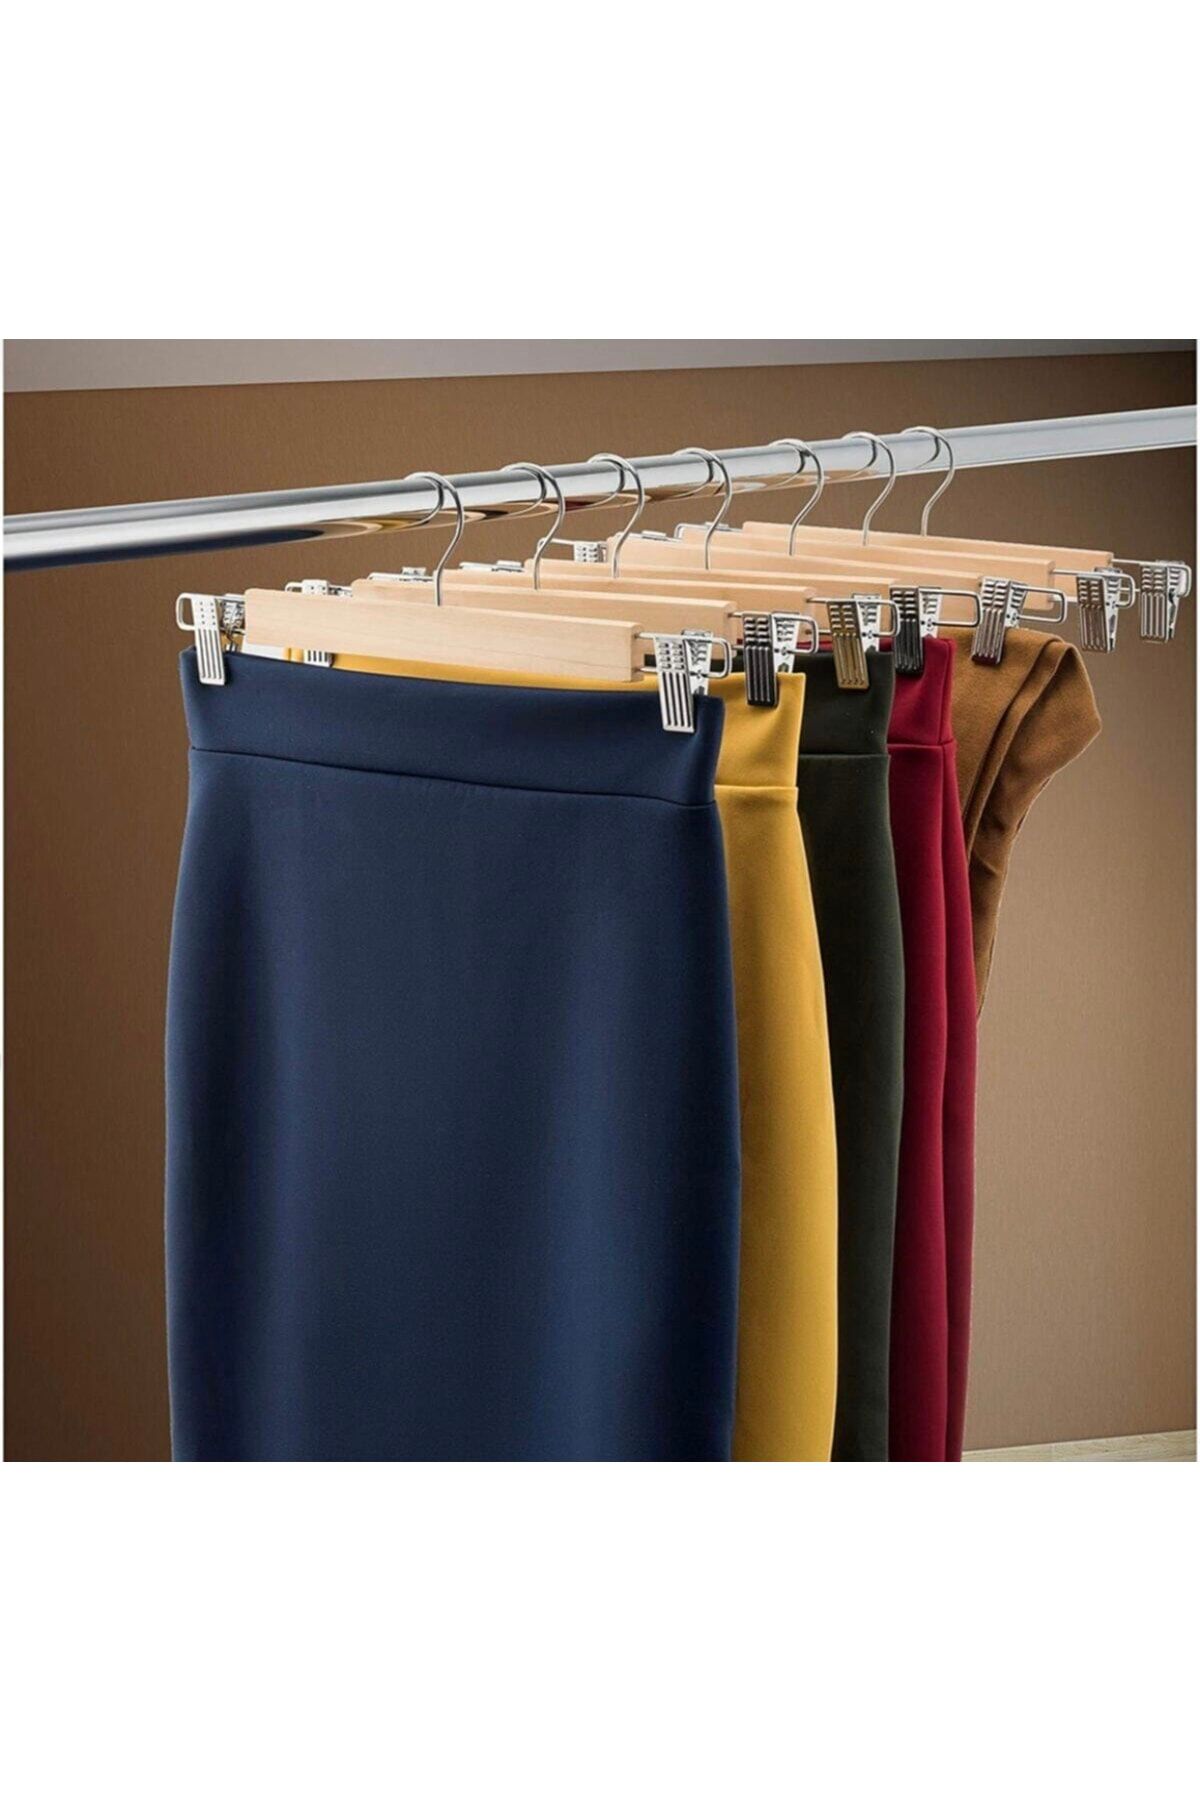 Skirt, Trouser, & Shirt Hangers for Women : Luxury Wooden Hangers